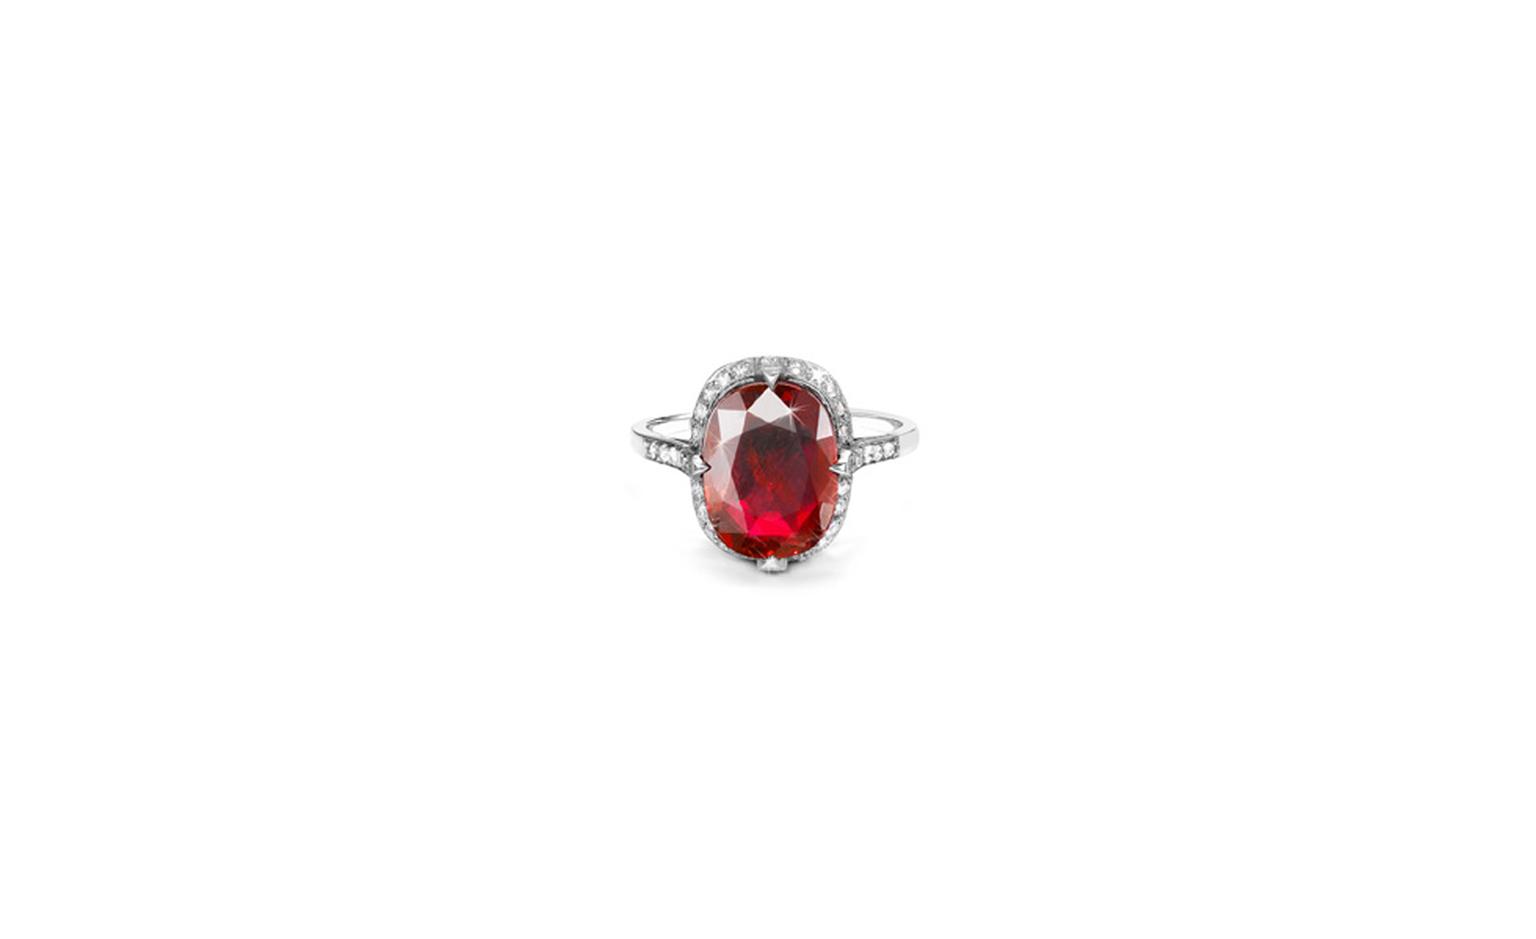 Pragnell Burmese ruby and diamond ring